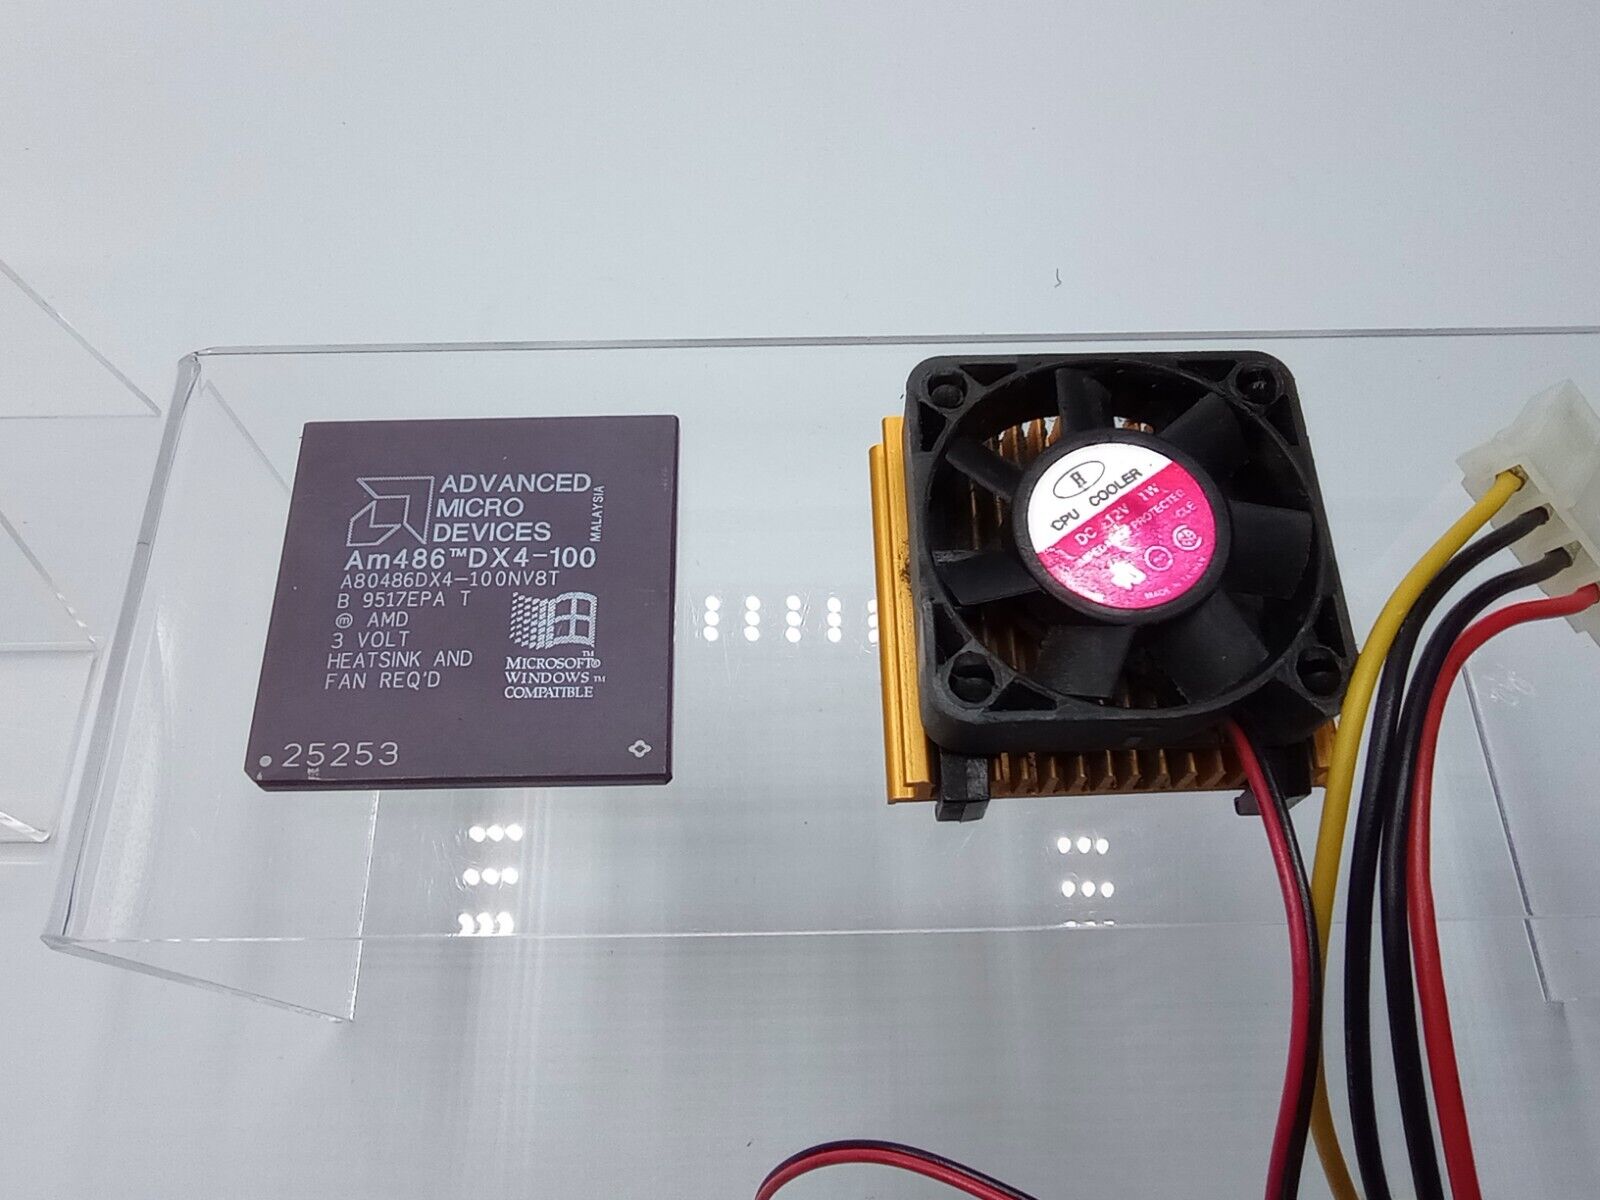 AMD Am486DX4-100 A80486DX4 100 NV8T Processor Socket 3 w/Heatsink and Fan